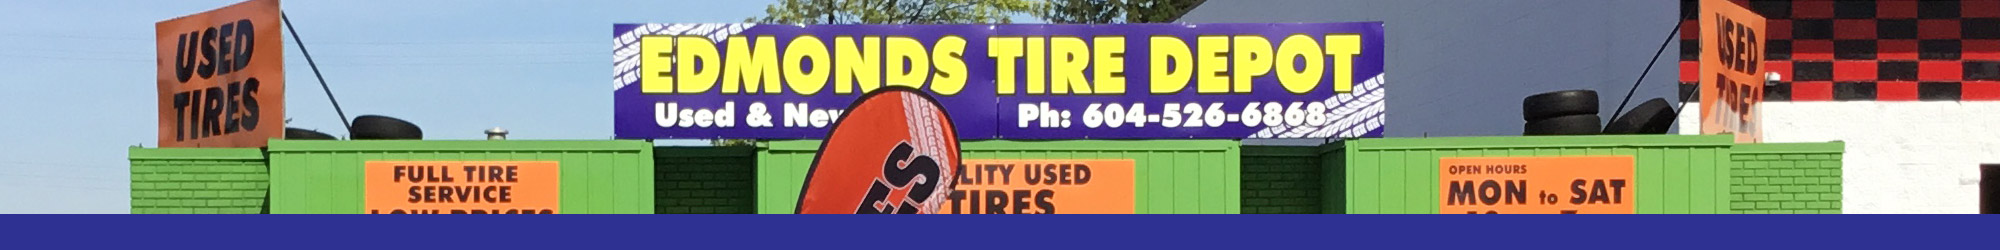 About Edmonds Tire Depot